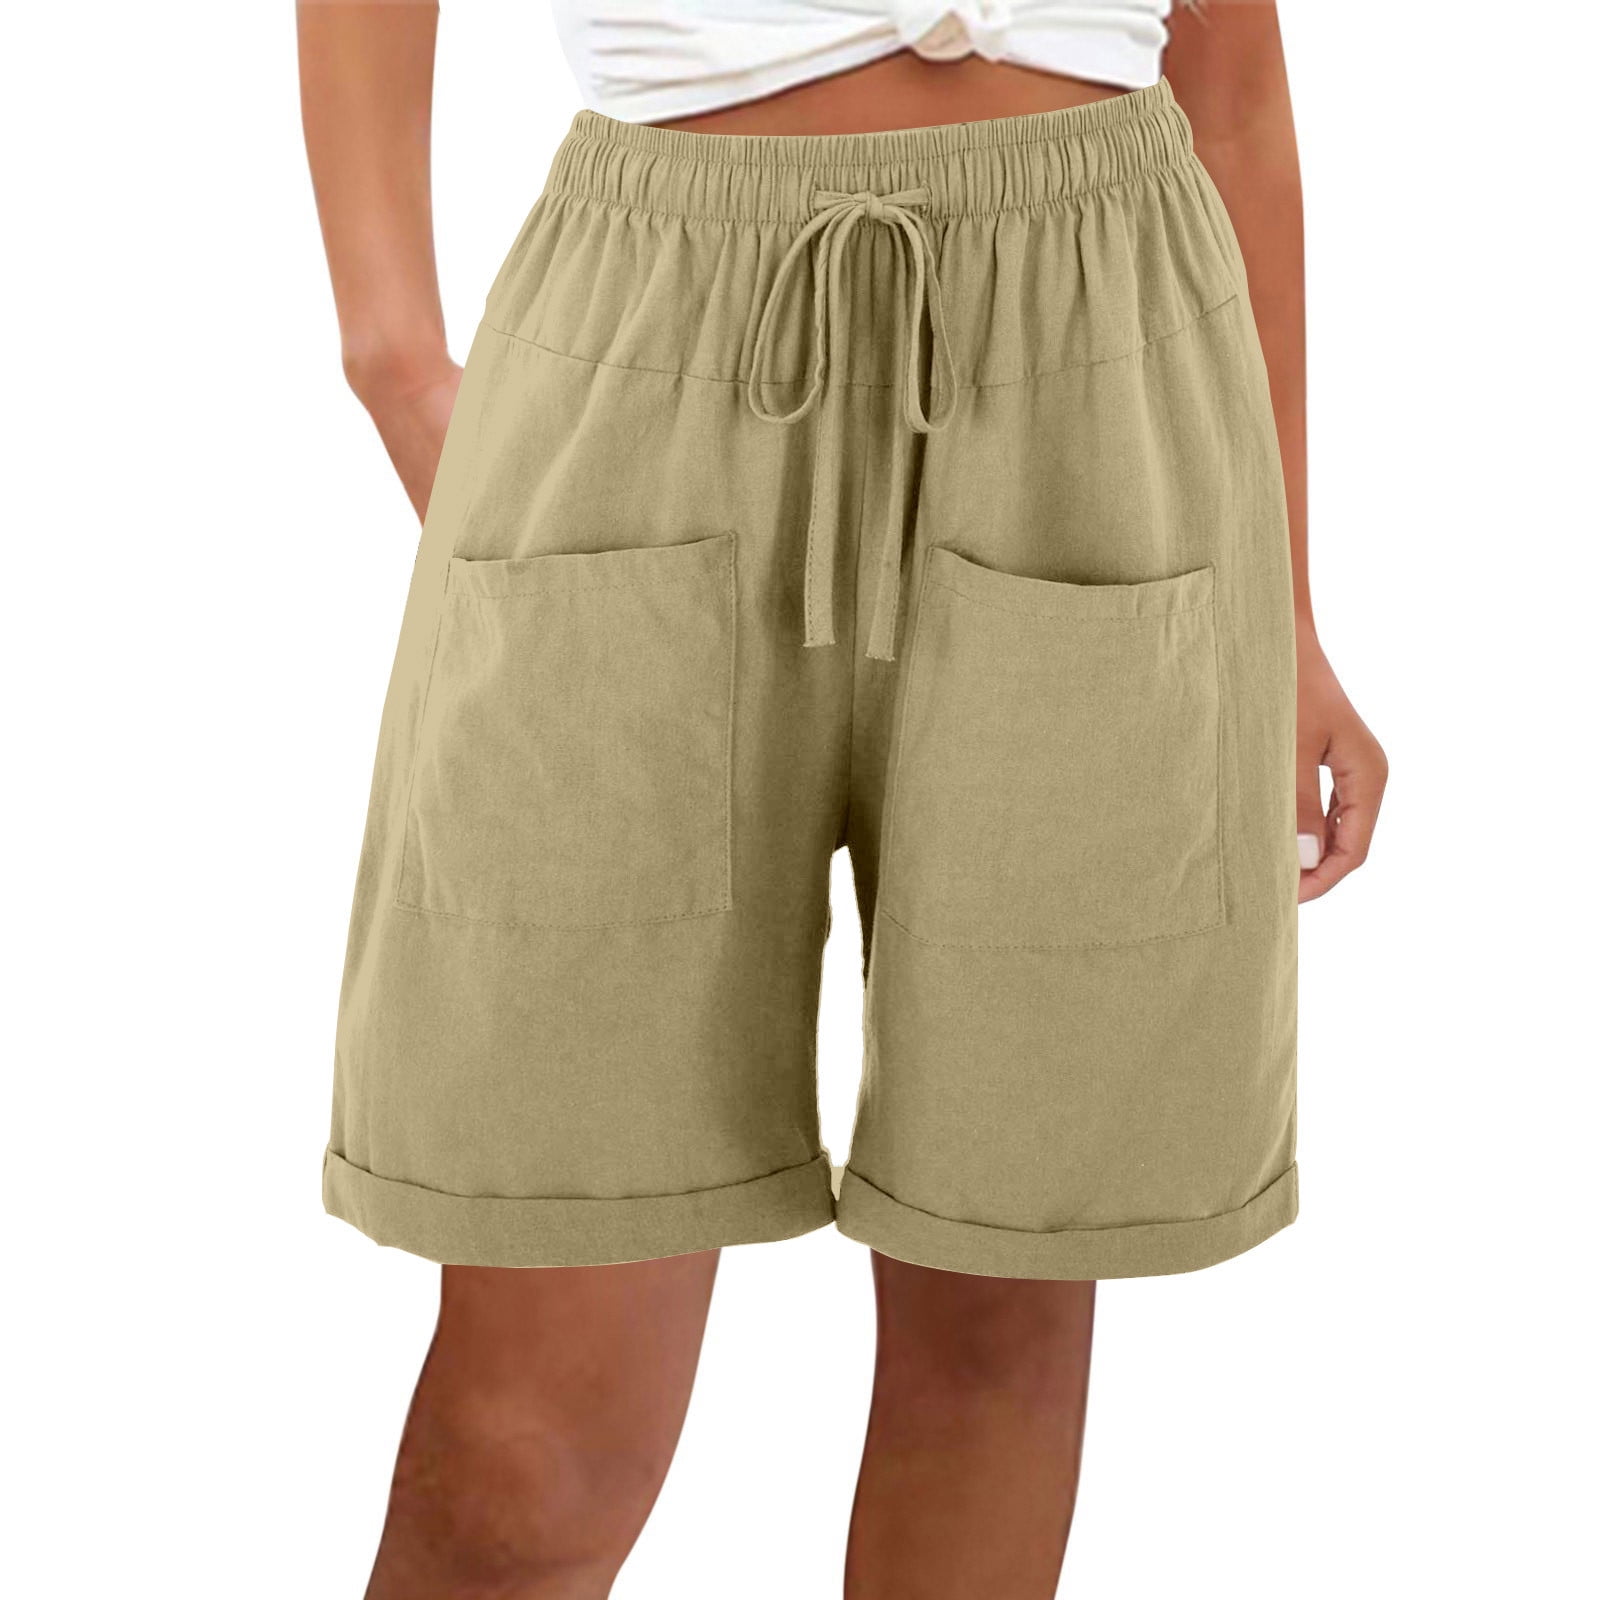 amelAEA High Waisted Wide Leg Shorts for Women Cotton Linen Shorts ...